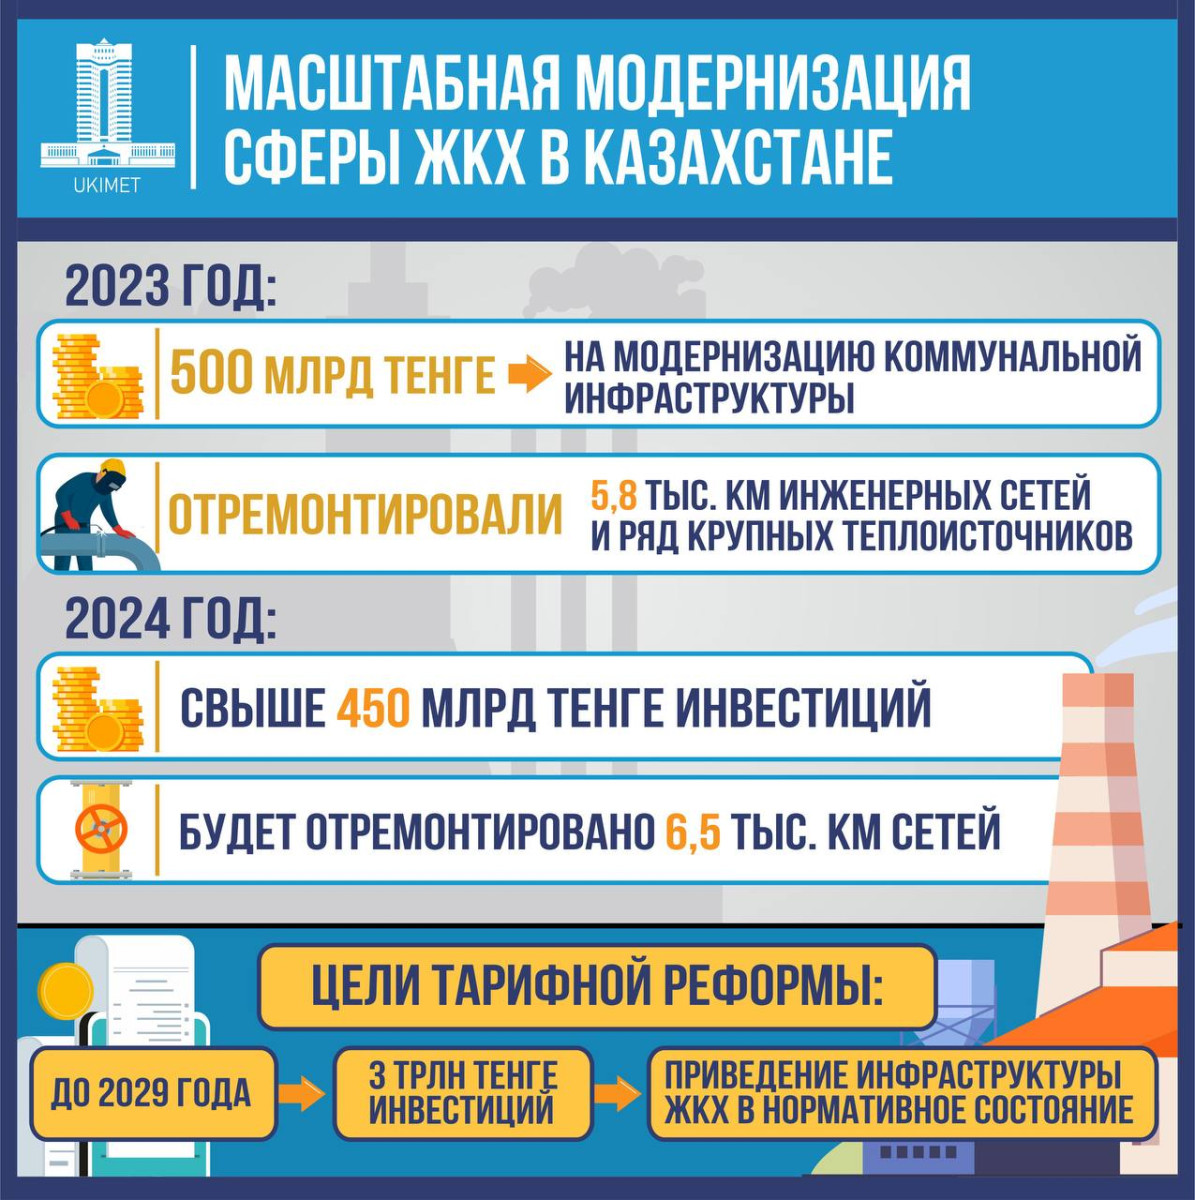 Масштабная модернизация сферы ЖКХ продолжится в Казахстане